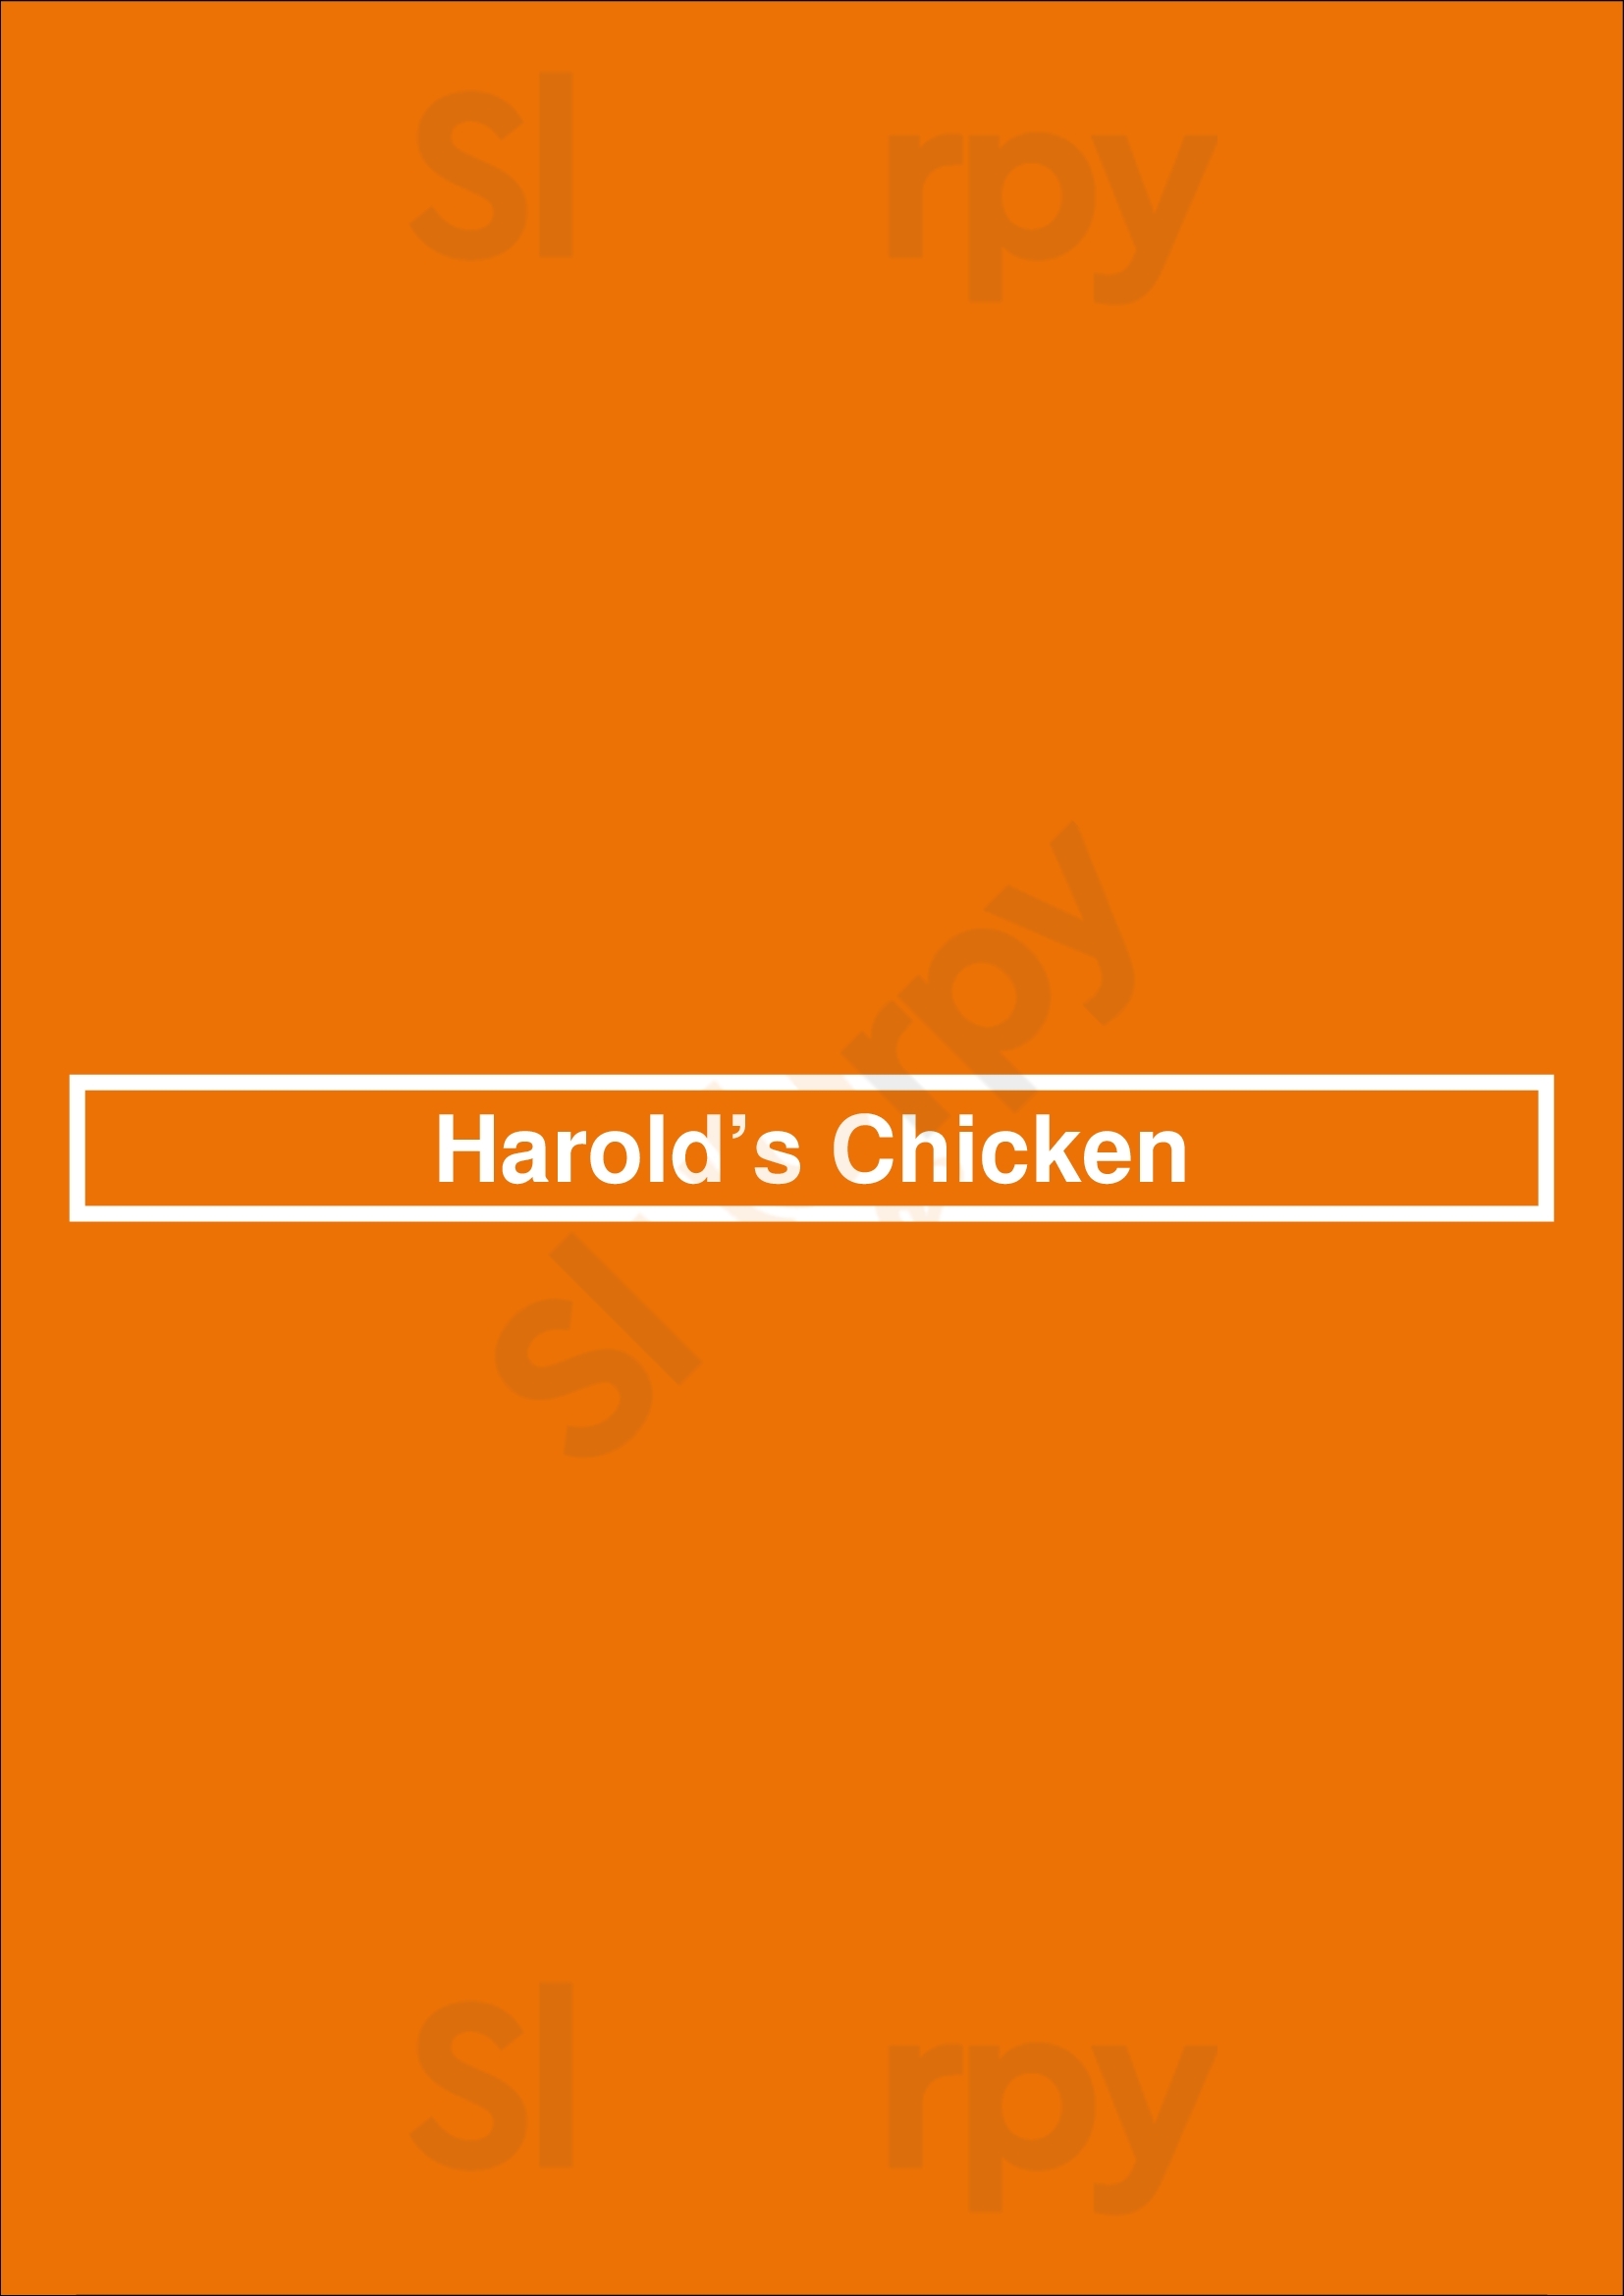 Harold’s Chicken Schaumburg Menu - 1